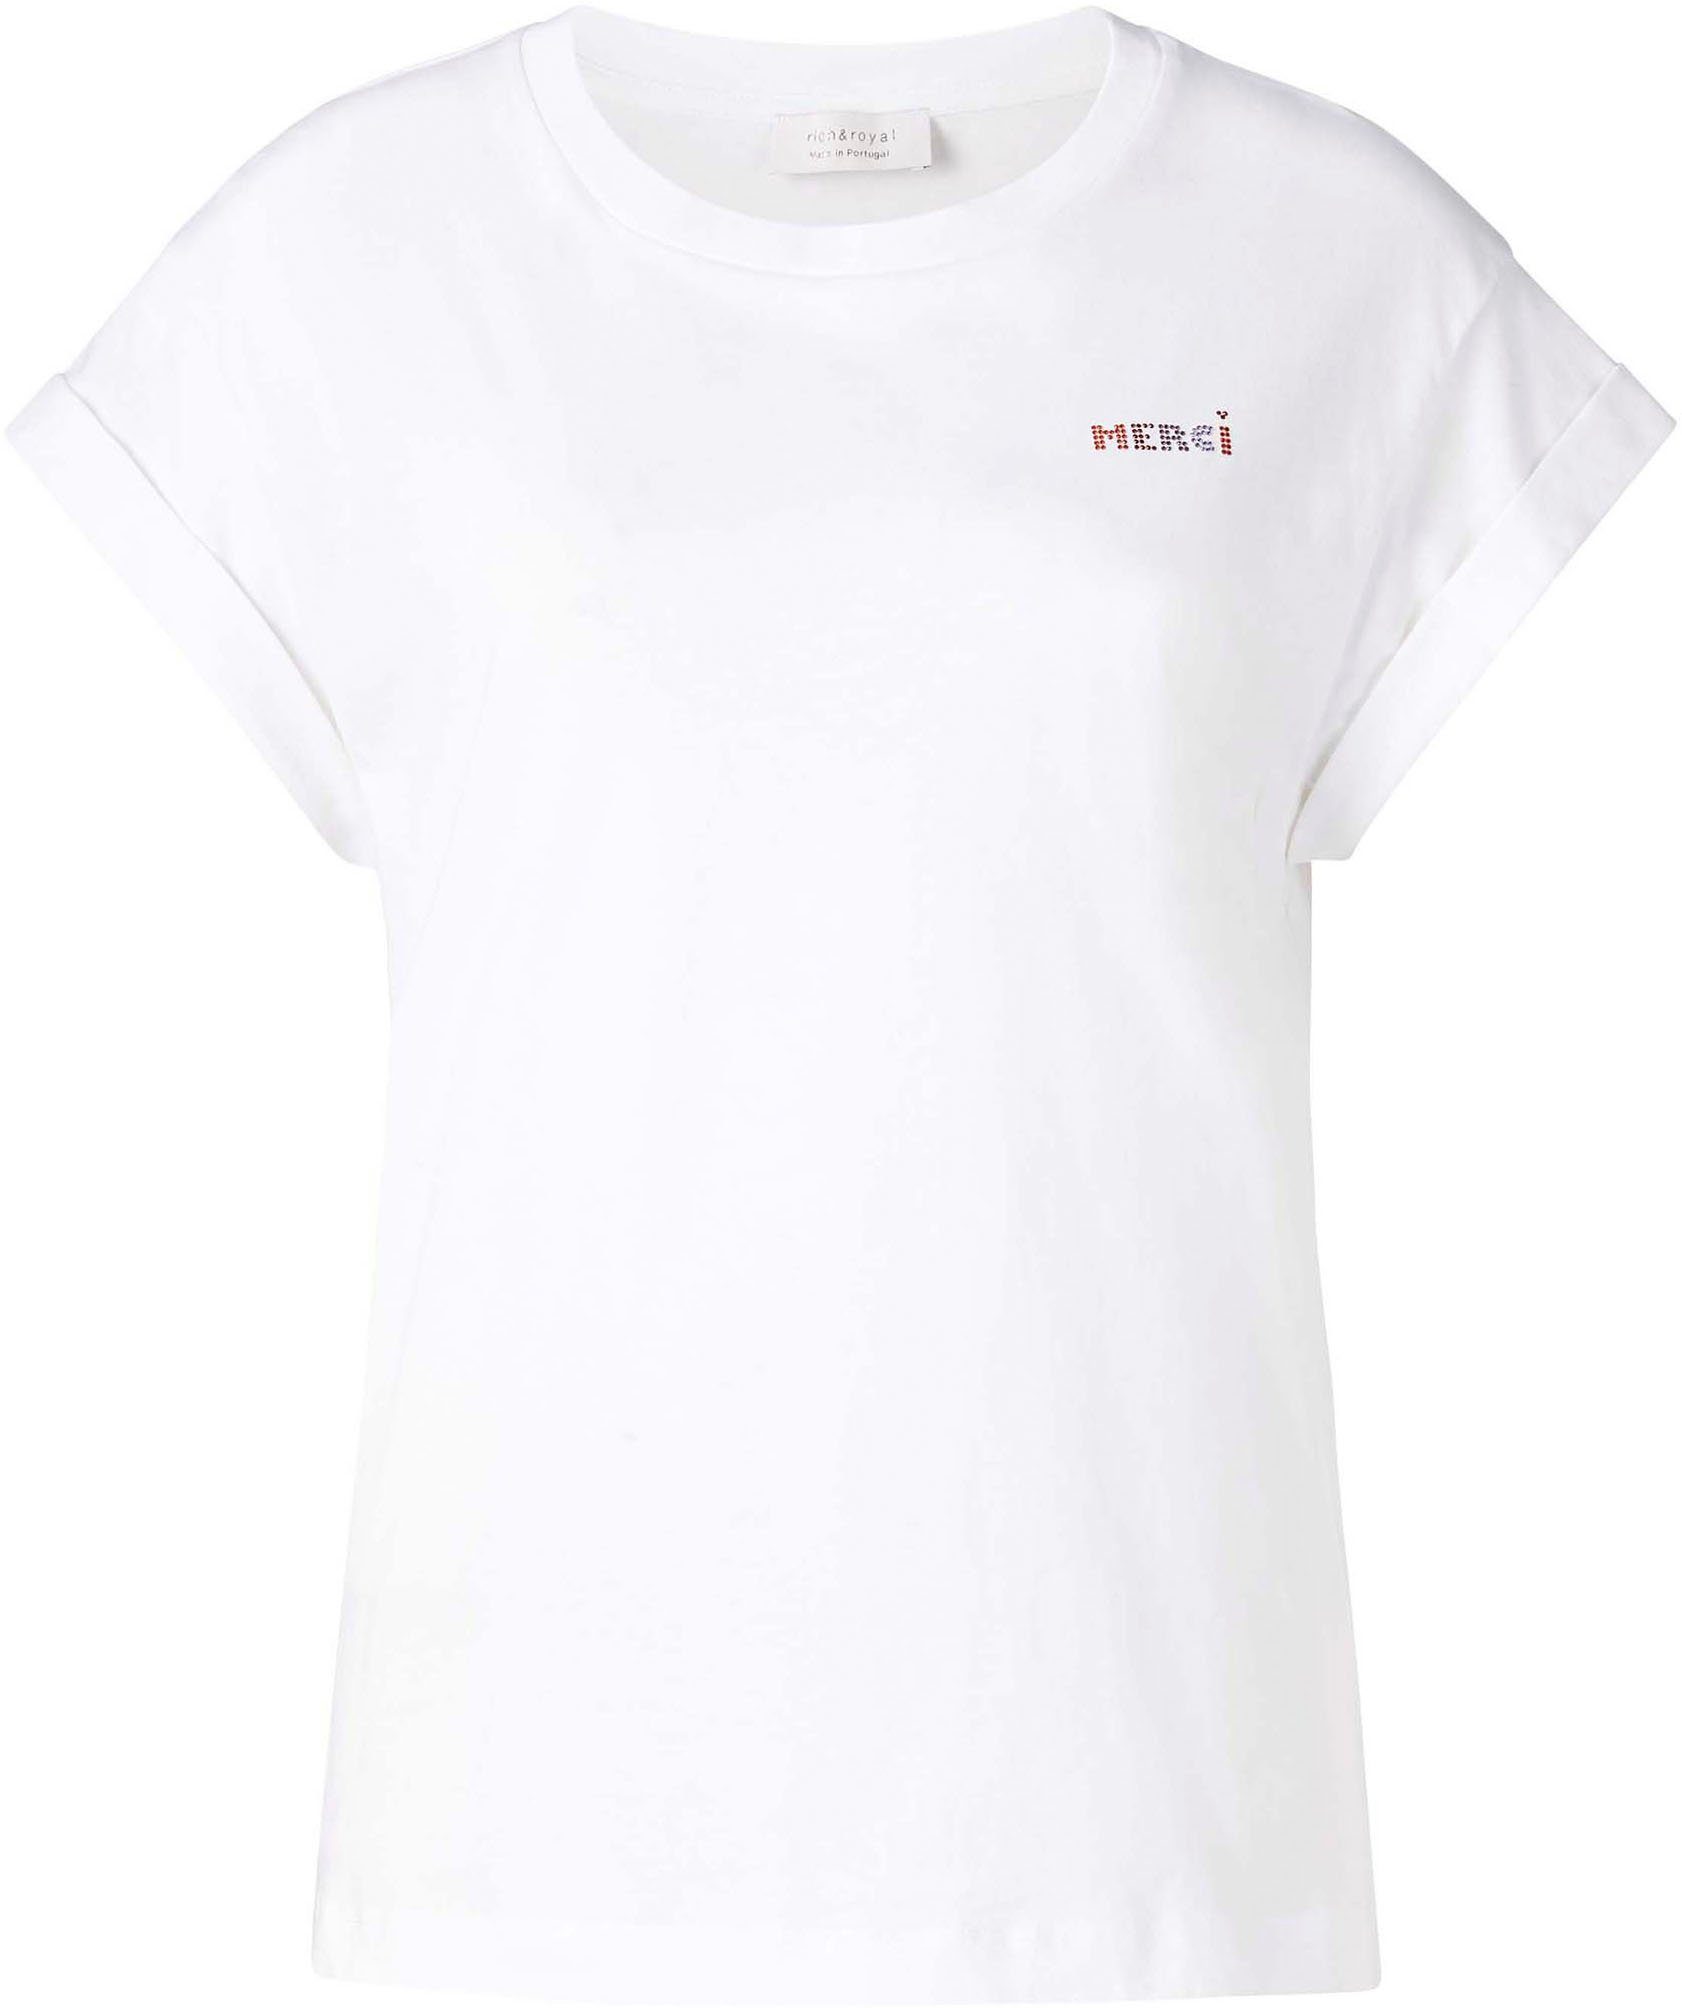 Rich & original mit in weiß Glitzer-Print Brusthöhe T-Shirt Royal